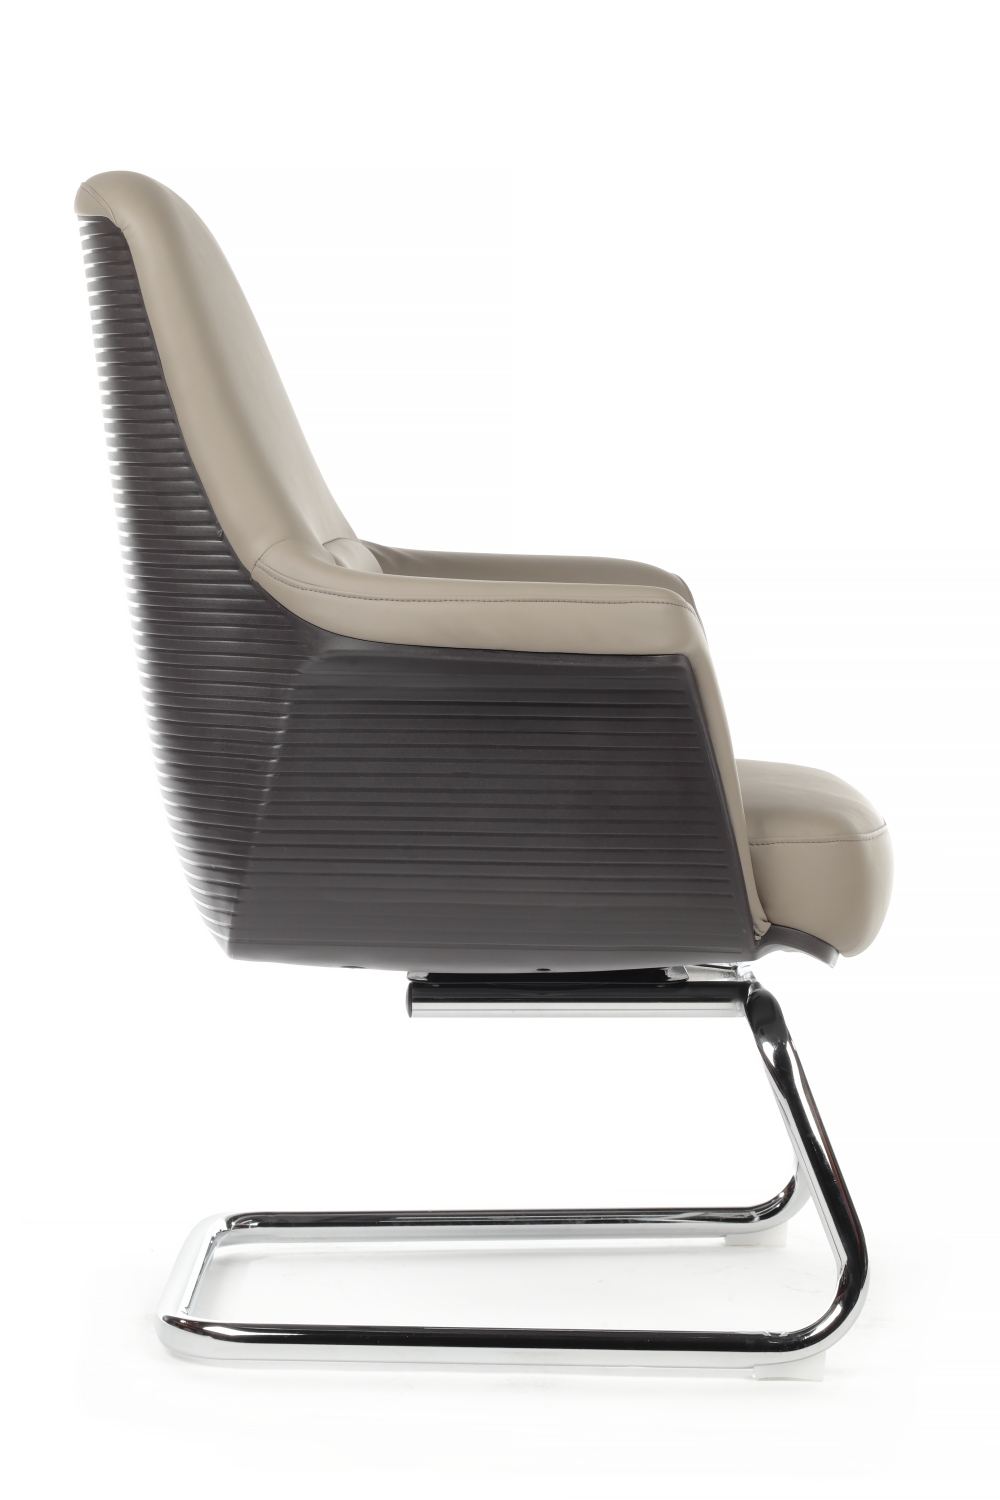 Конференц кресло RIVA DESIGN Verdi SF D655 экокожа Серый